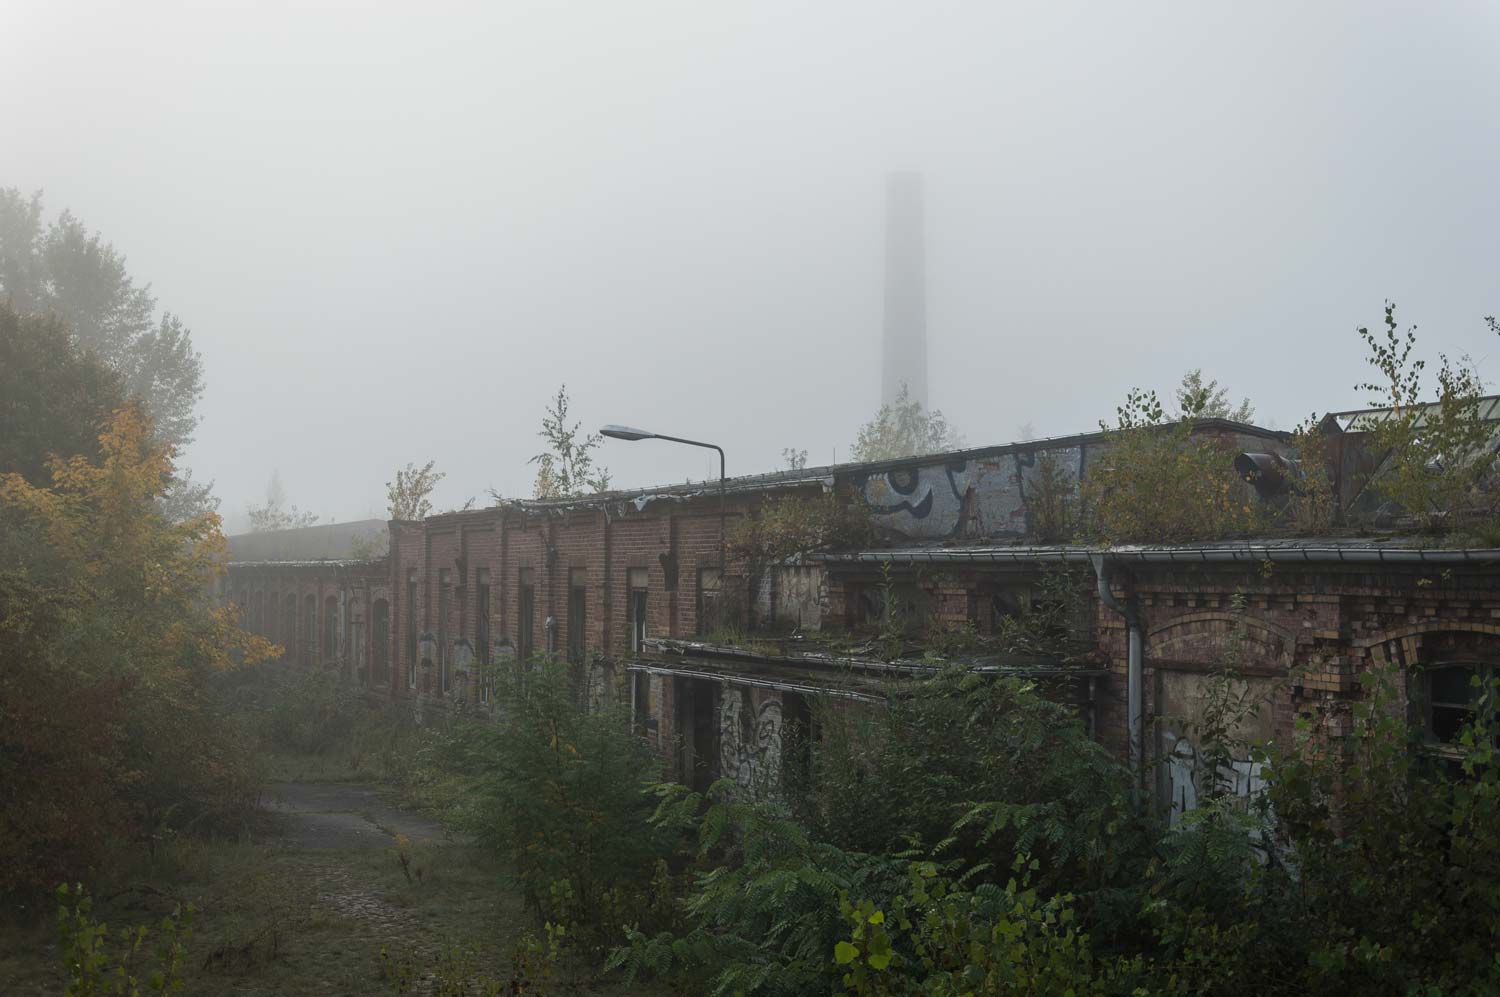 Fabrikruine im Nebel